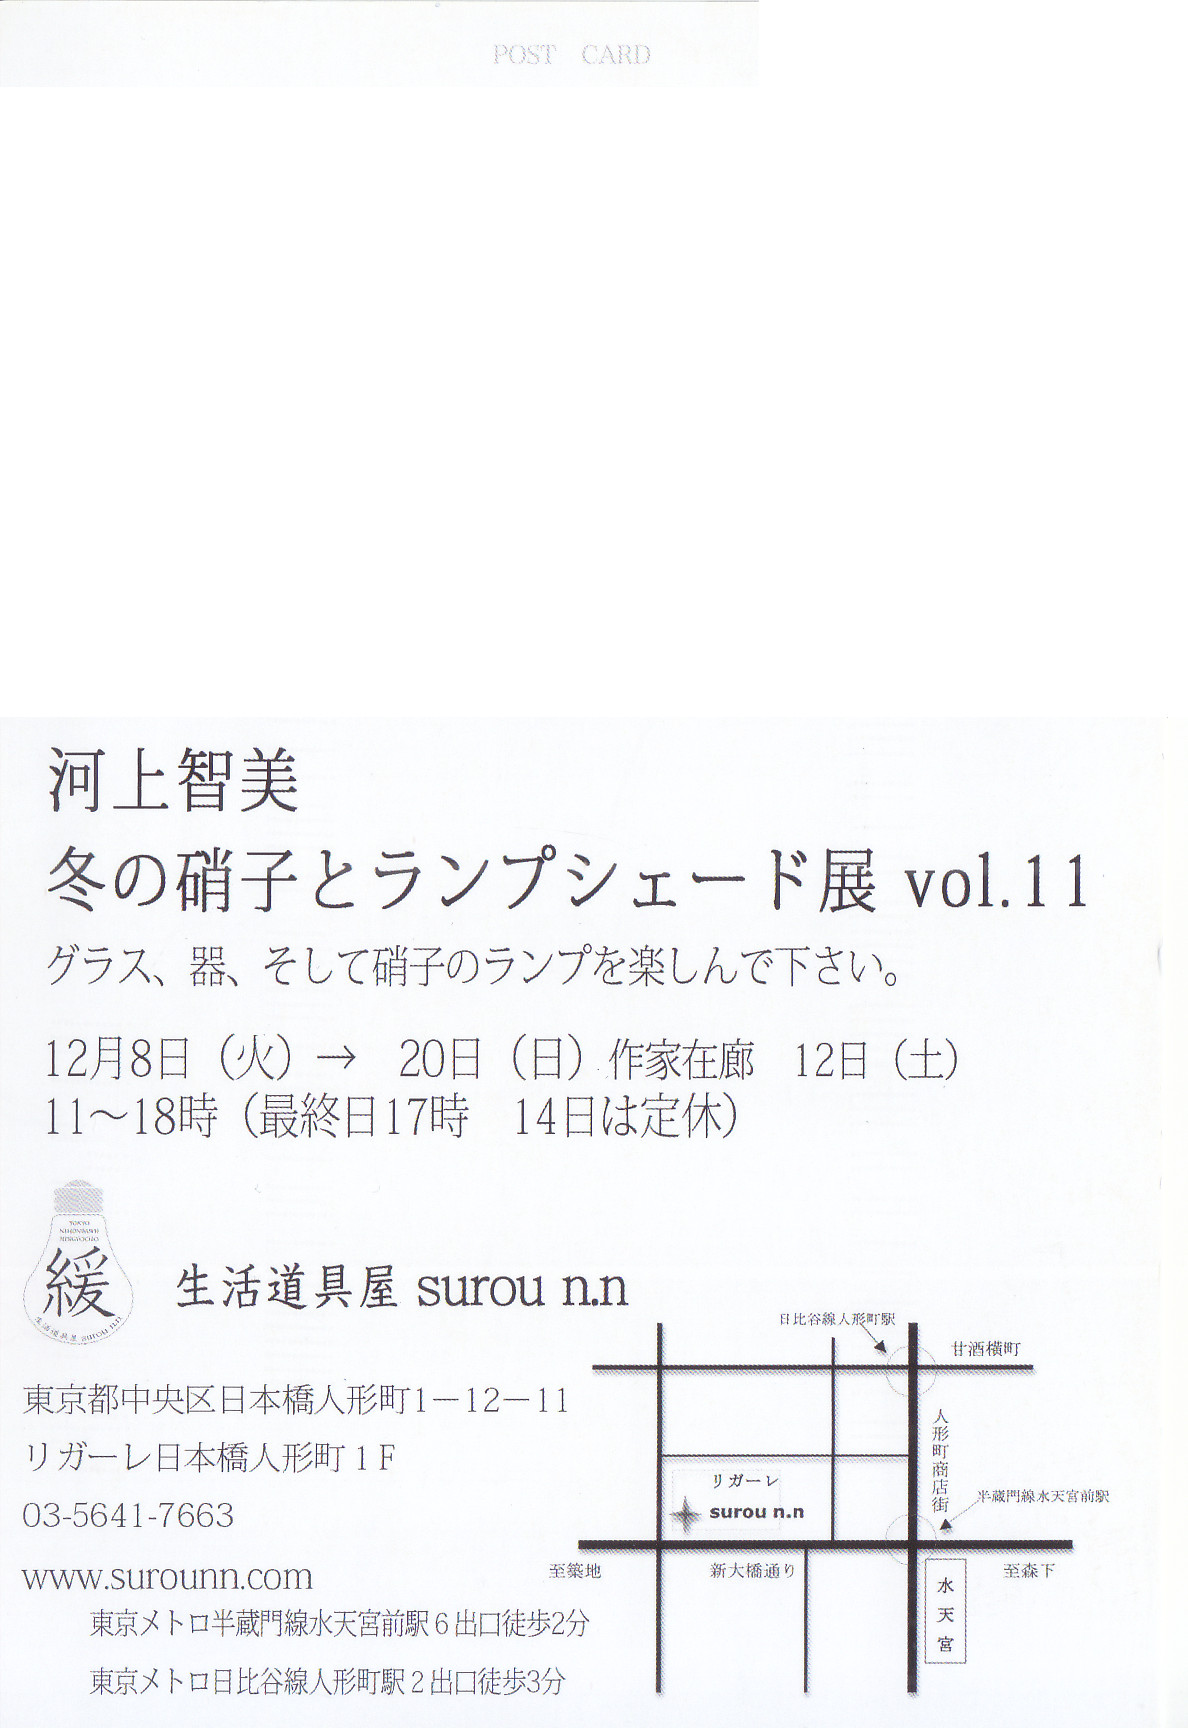 河上智美 冬の硝子とランプシェード展 Vol.11 | パウダーフュージングスタジオ